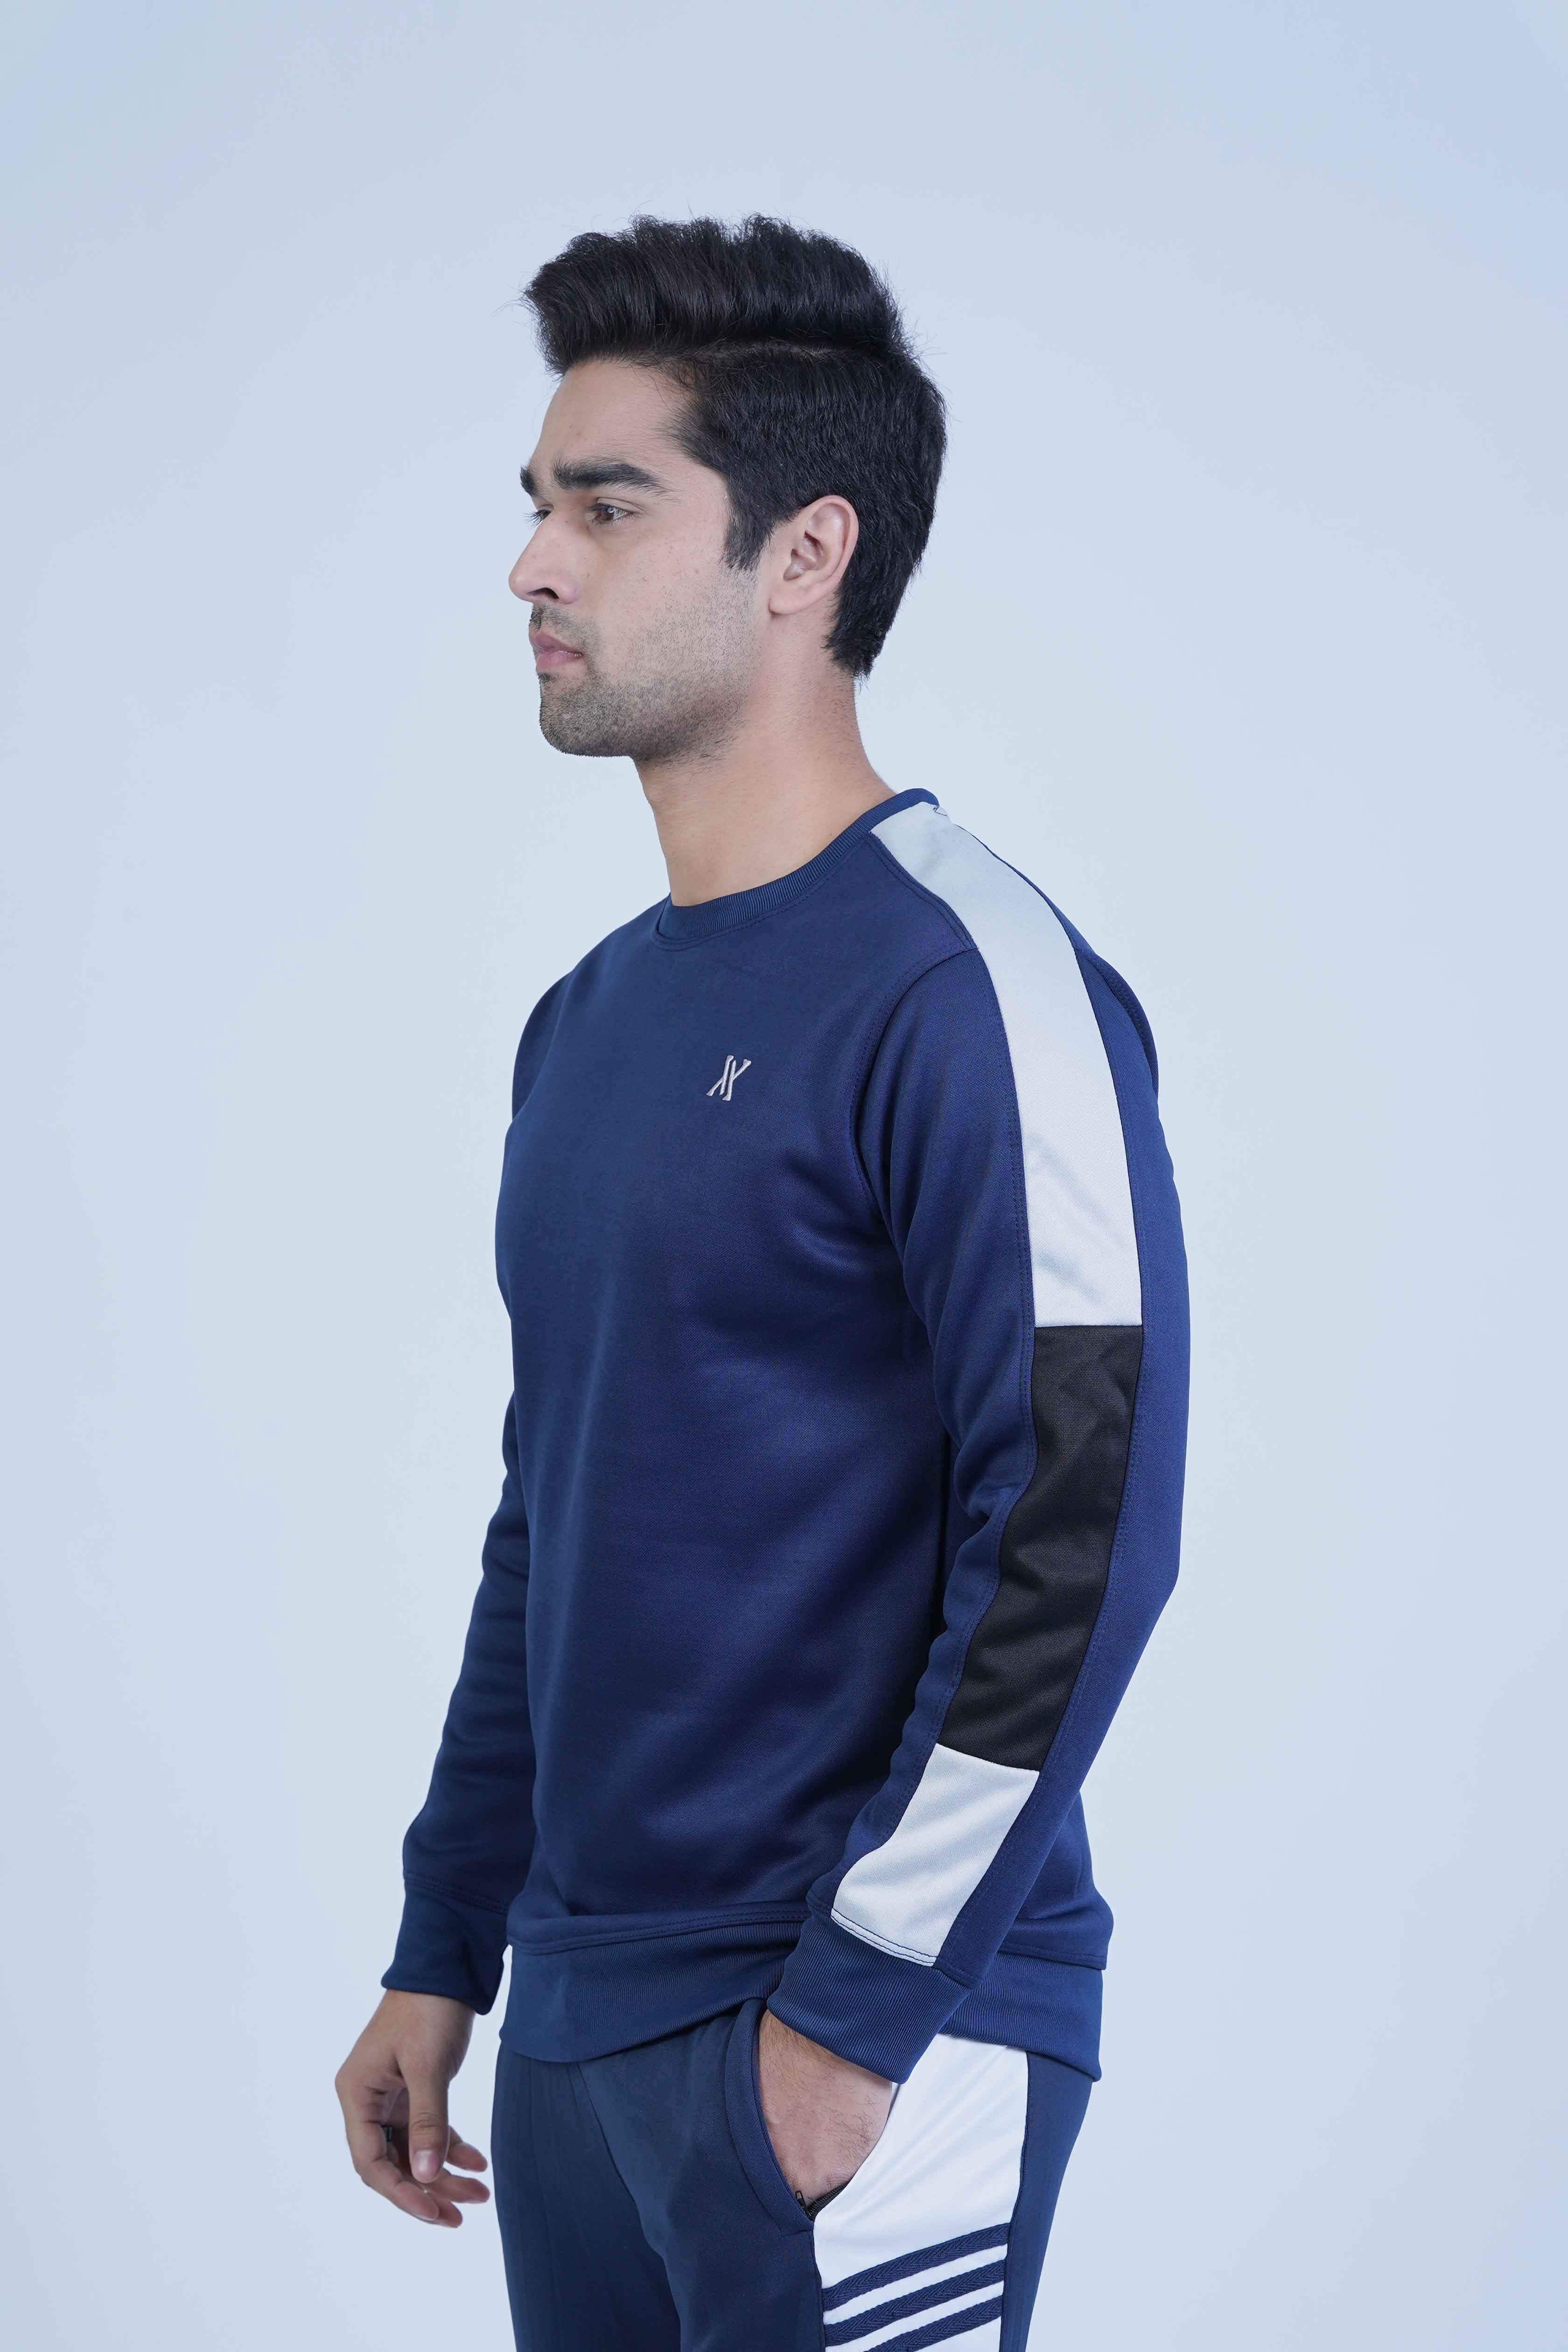  The Xea Men's Eco Smart Navy Blue Sweatshirt